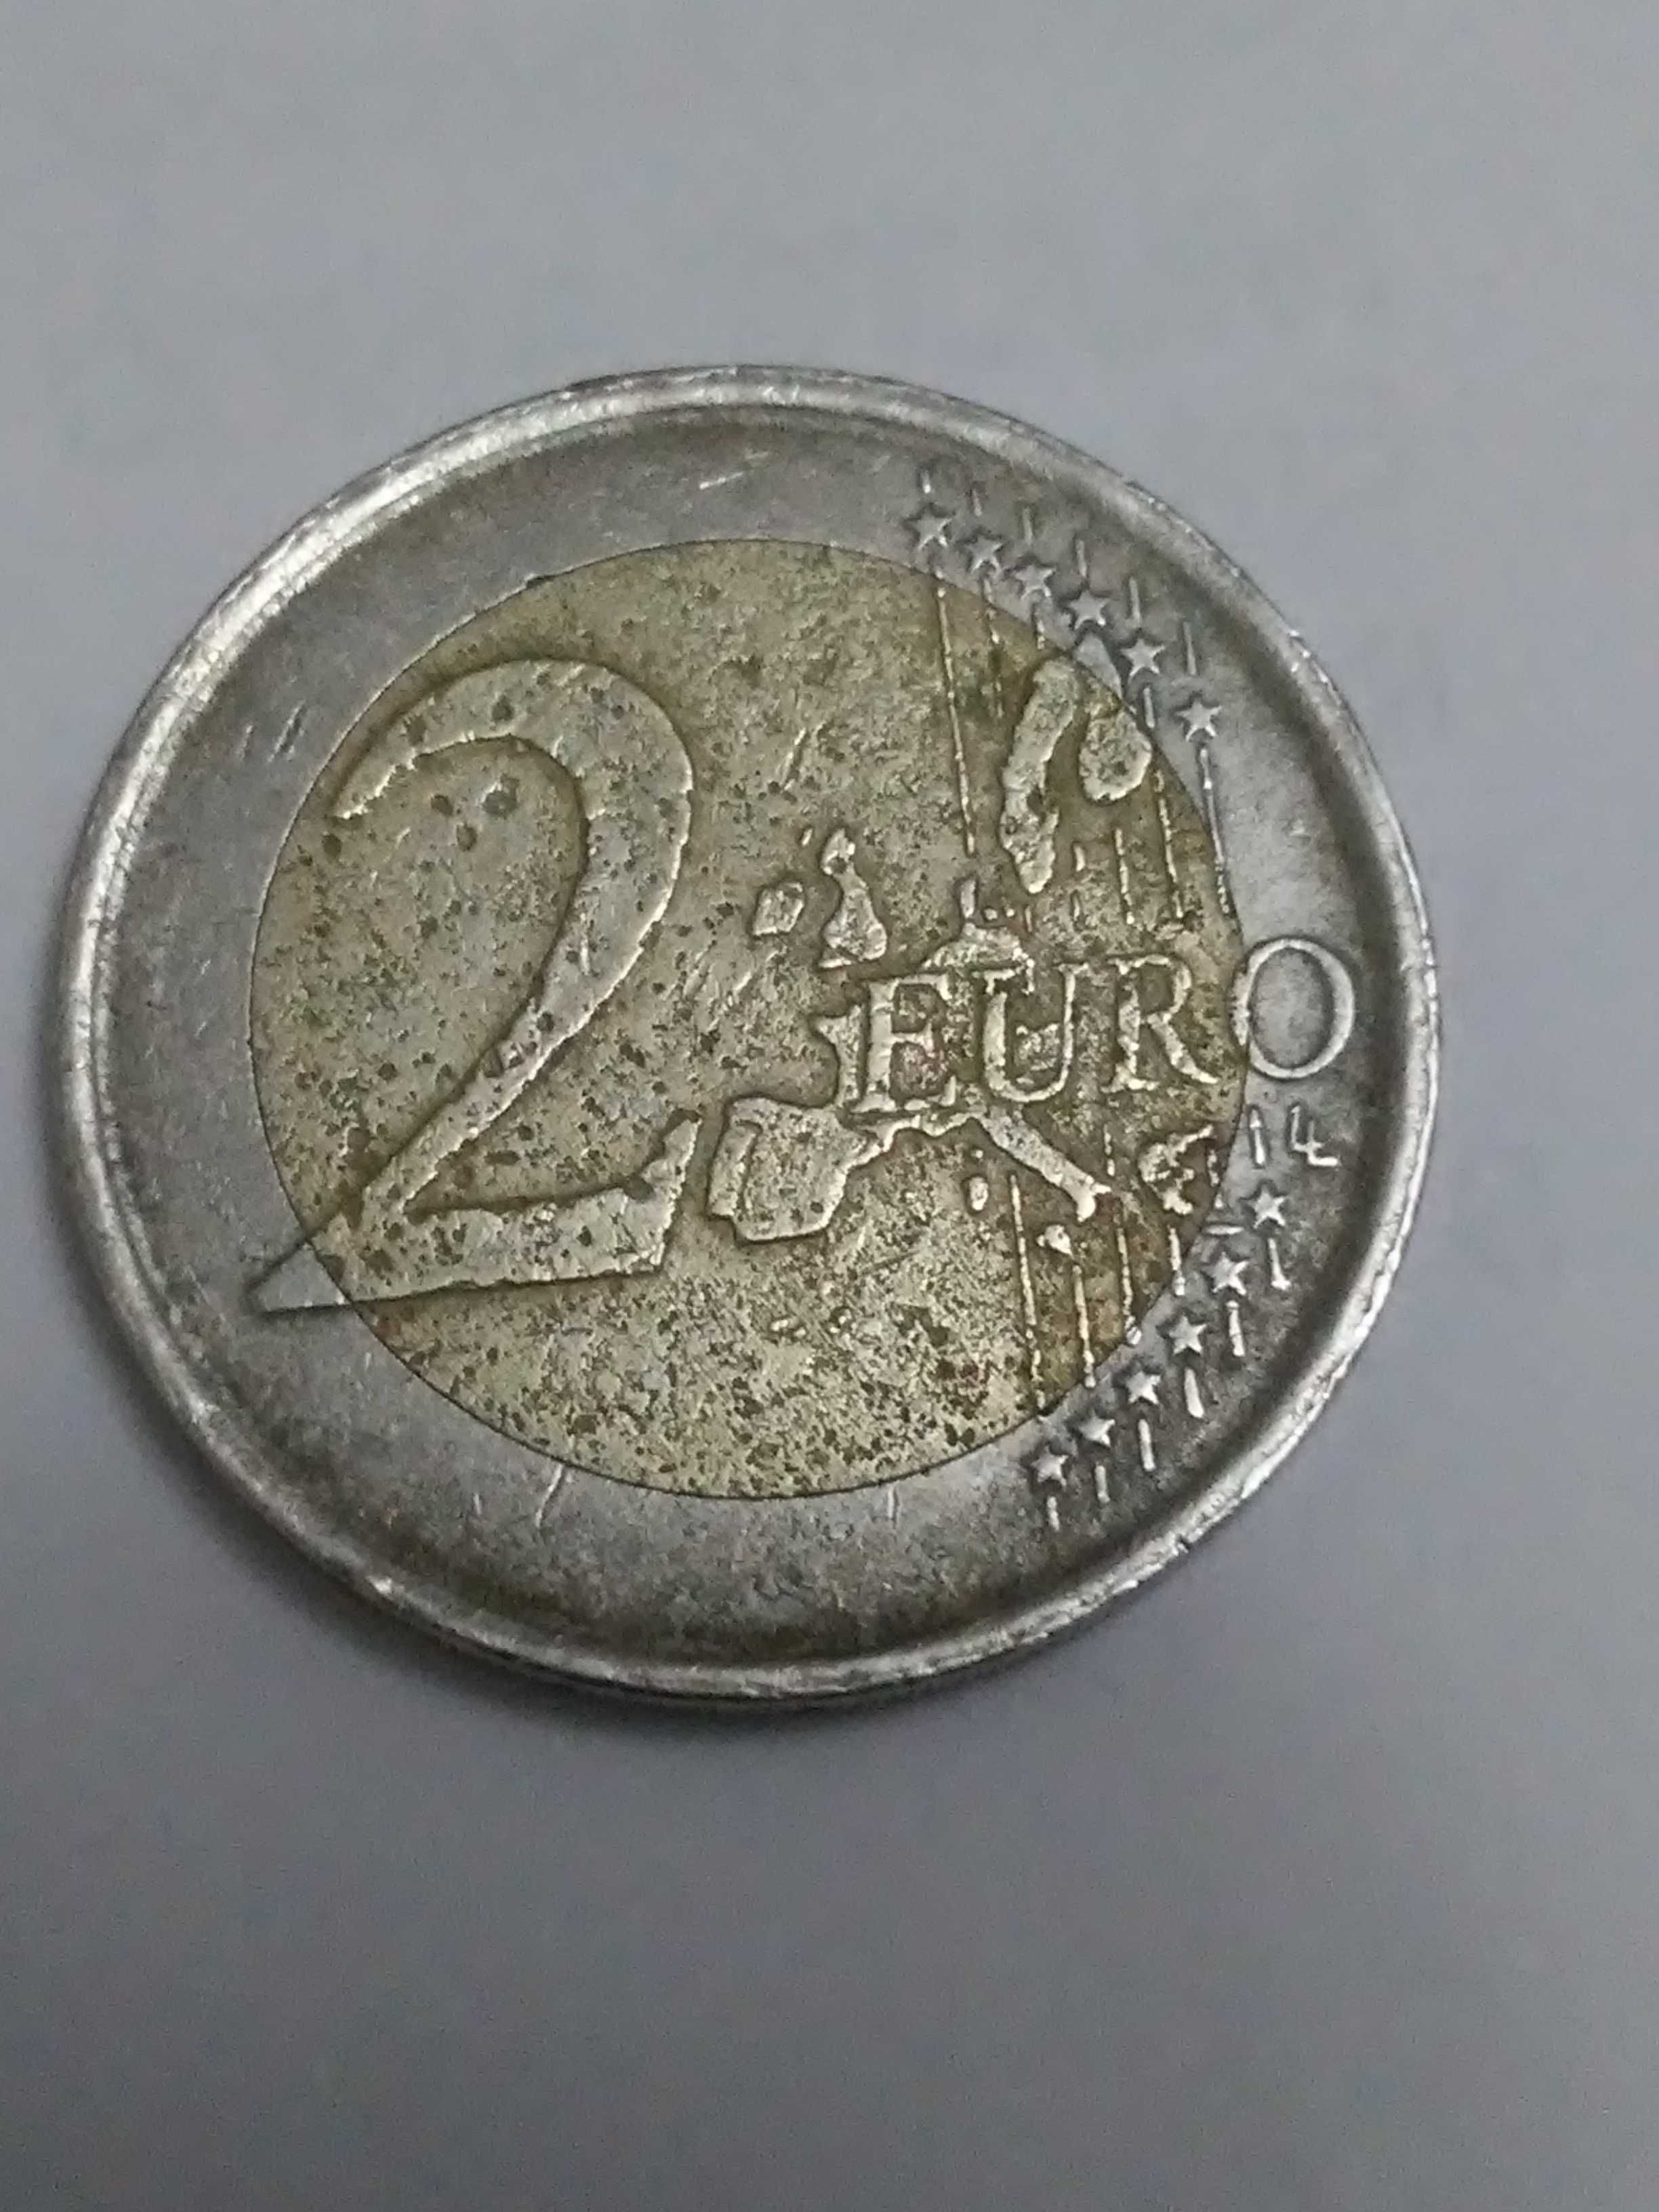 Moeda de 2 euros com defeito de cunho